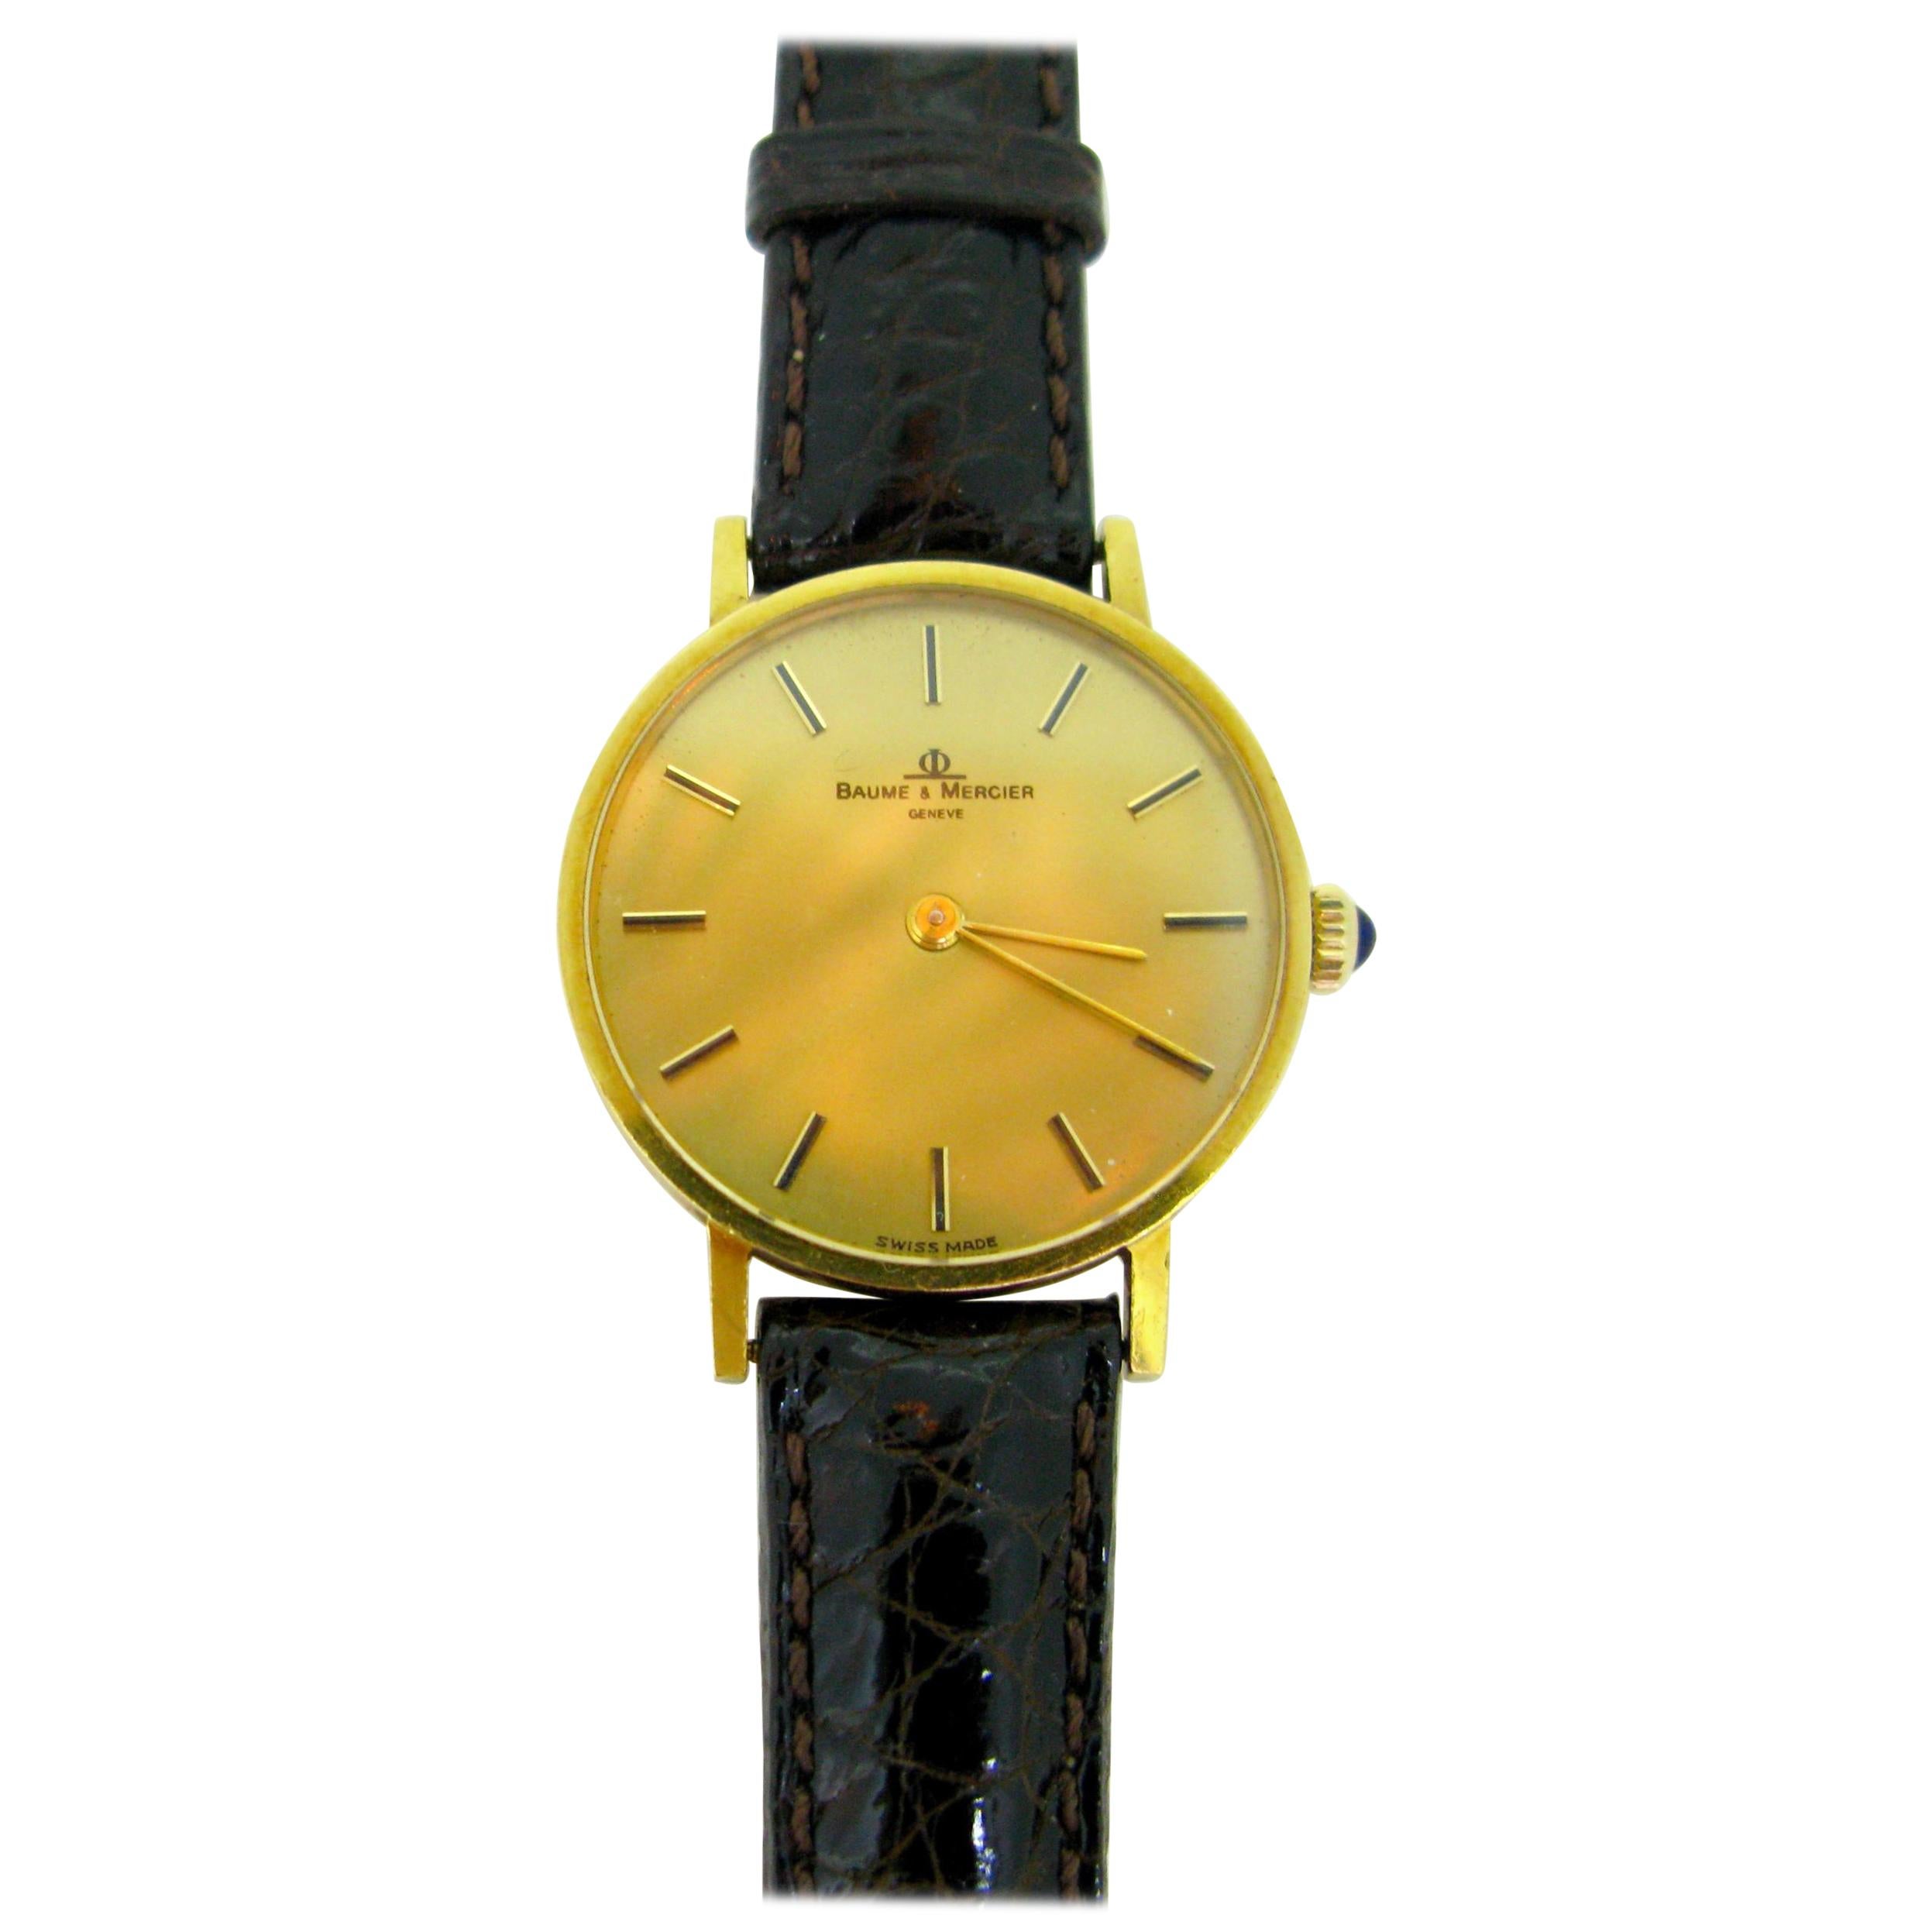 Baume & Mercier 35121 Gelbgold Mechanische Armbanduhr